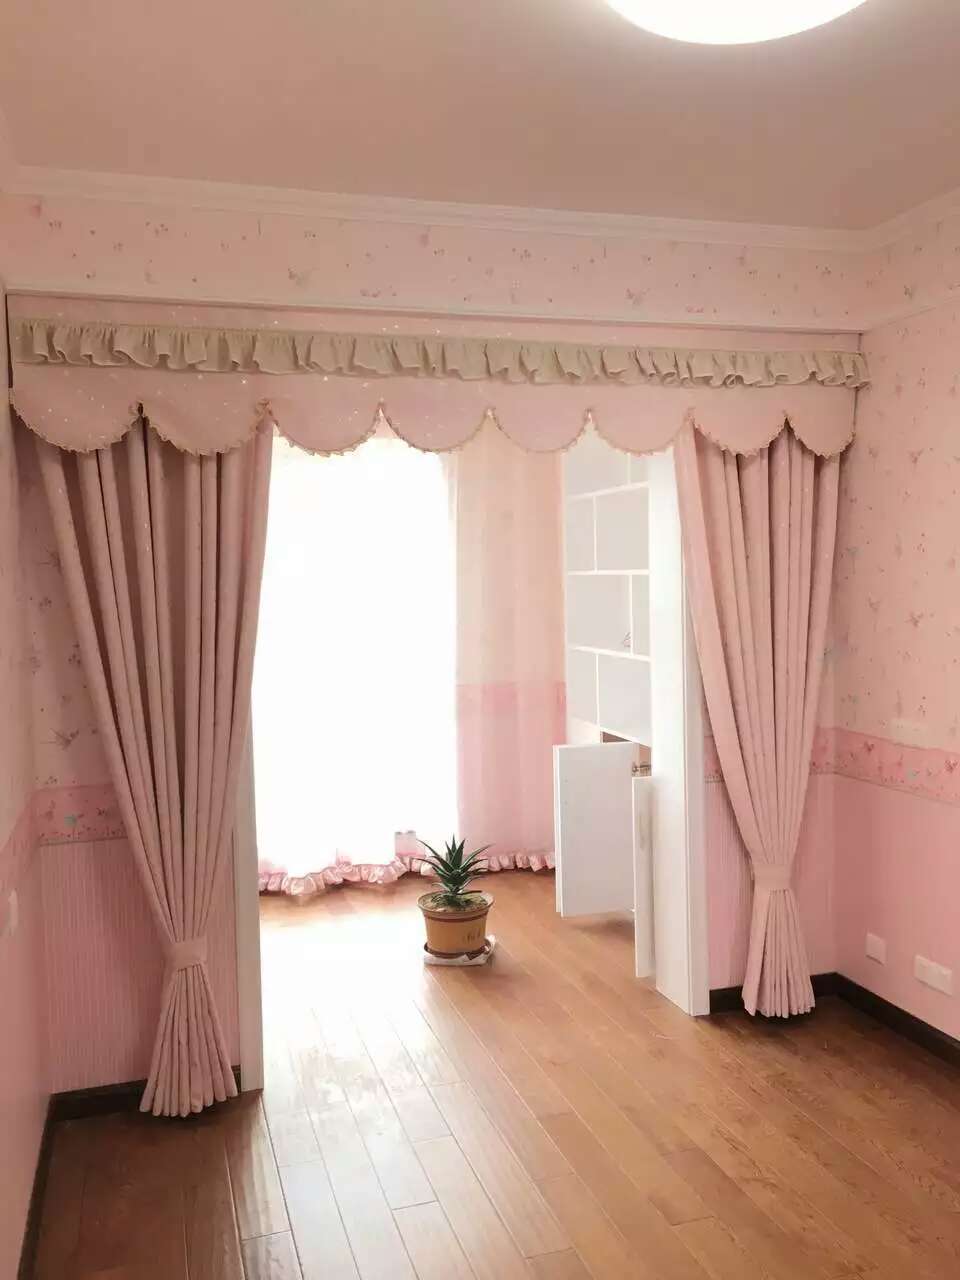 粉色窗帘